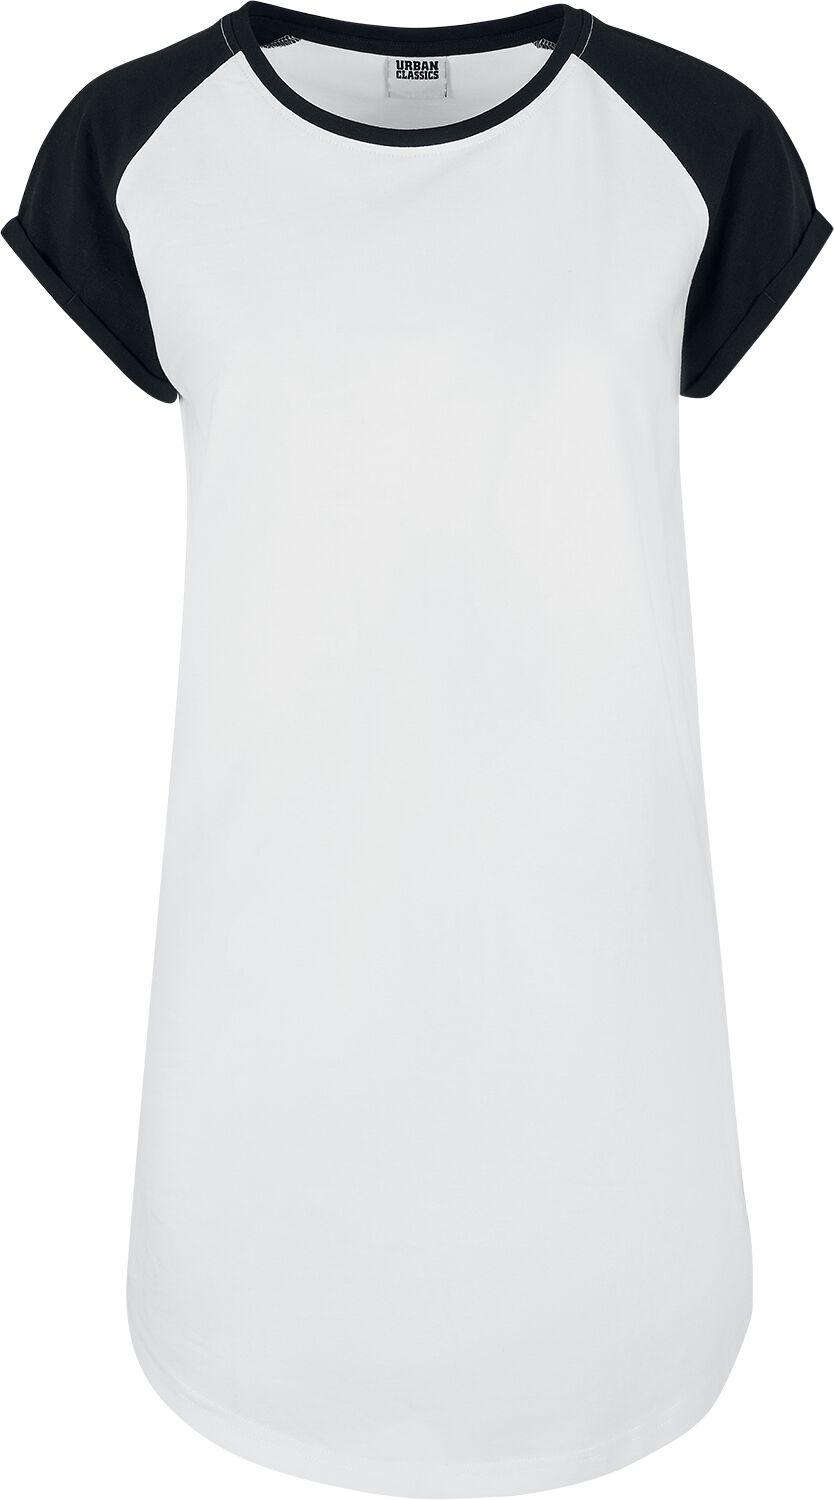 Robe courte de Urban Classics - Ladies Contrast Raglan Tee Dress - XS à 4XL - pour Femme - blanc/noi